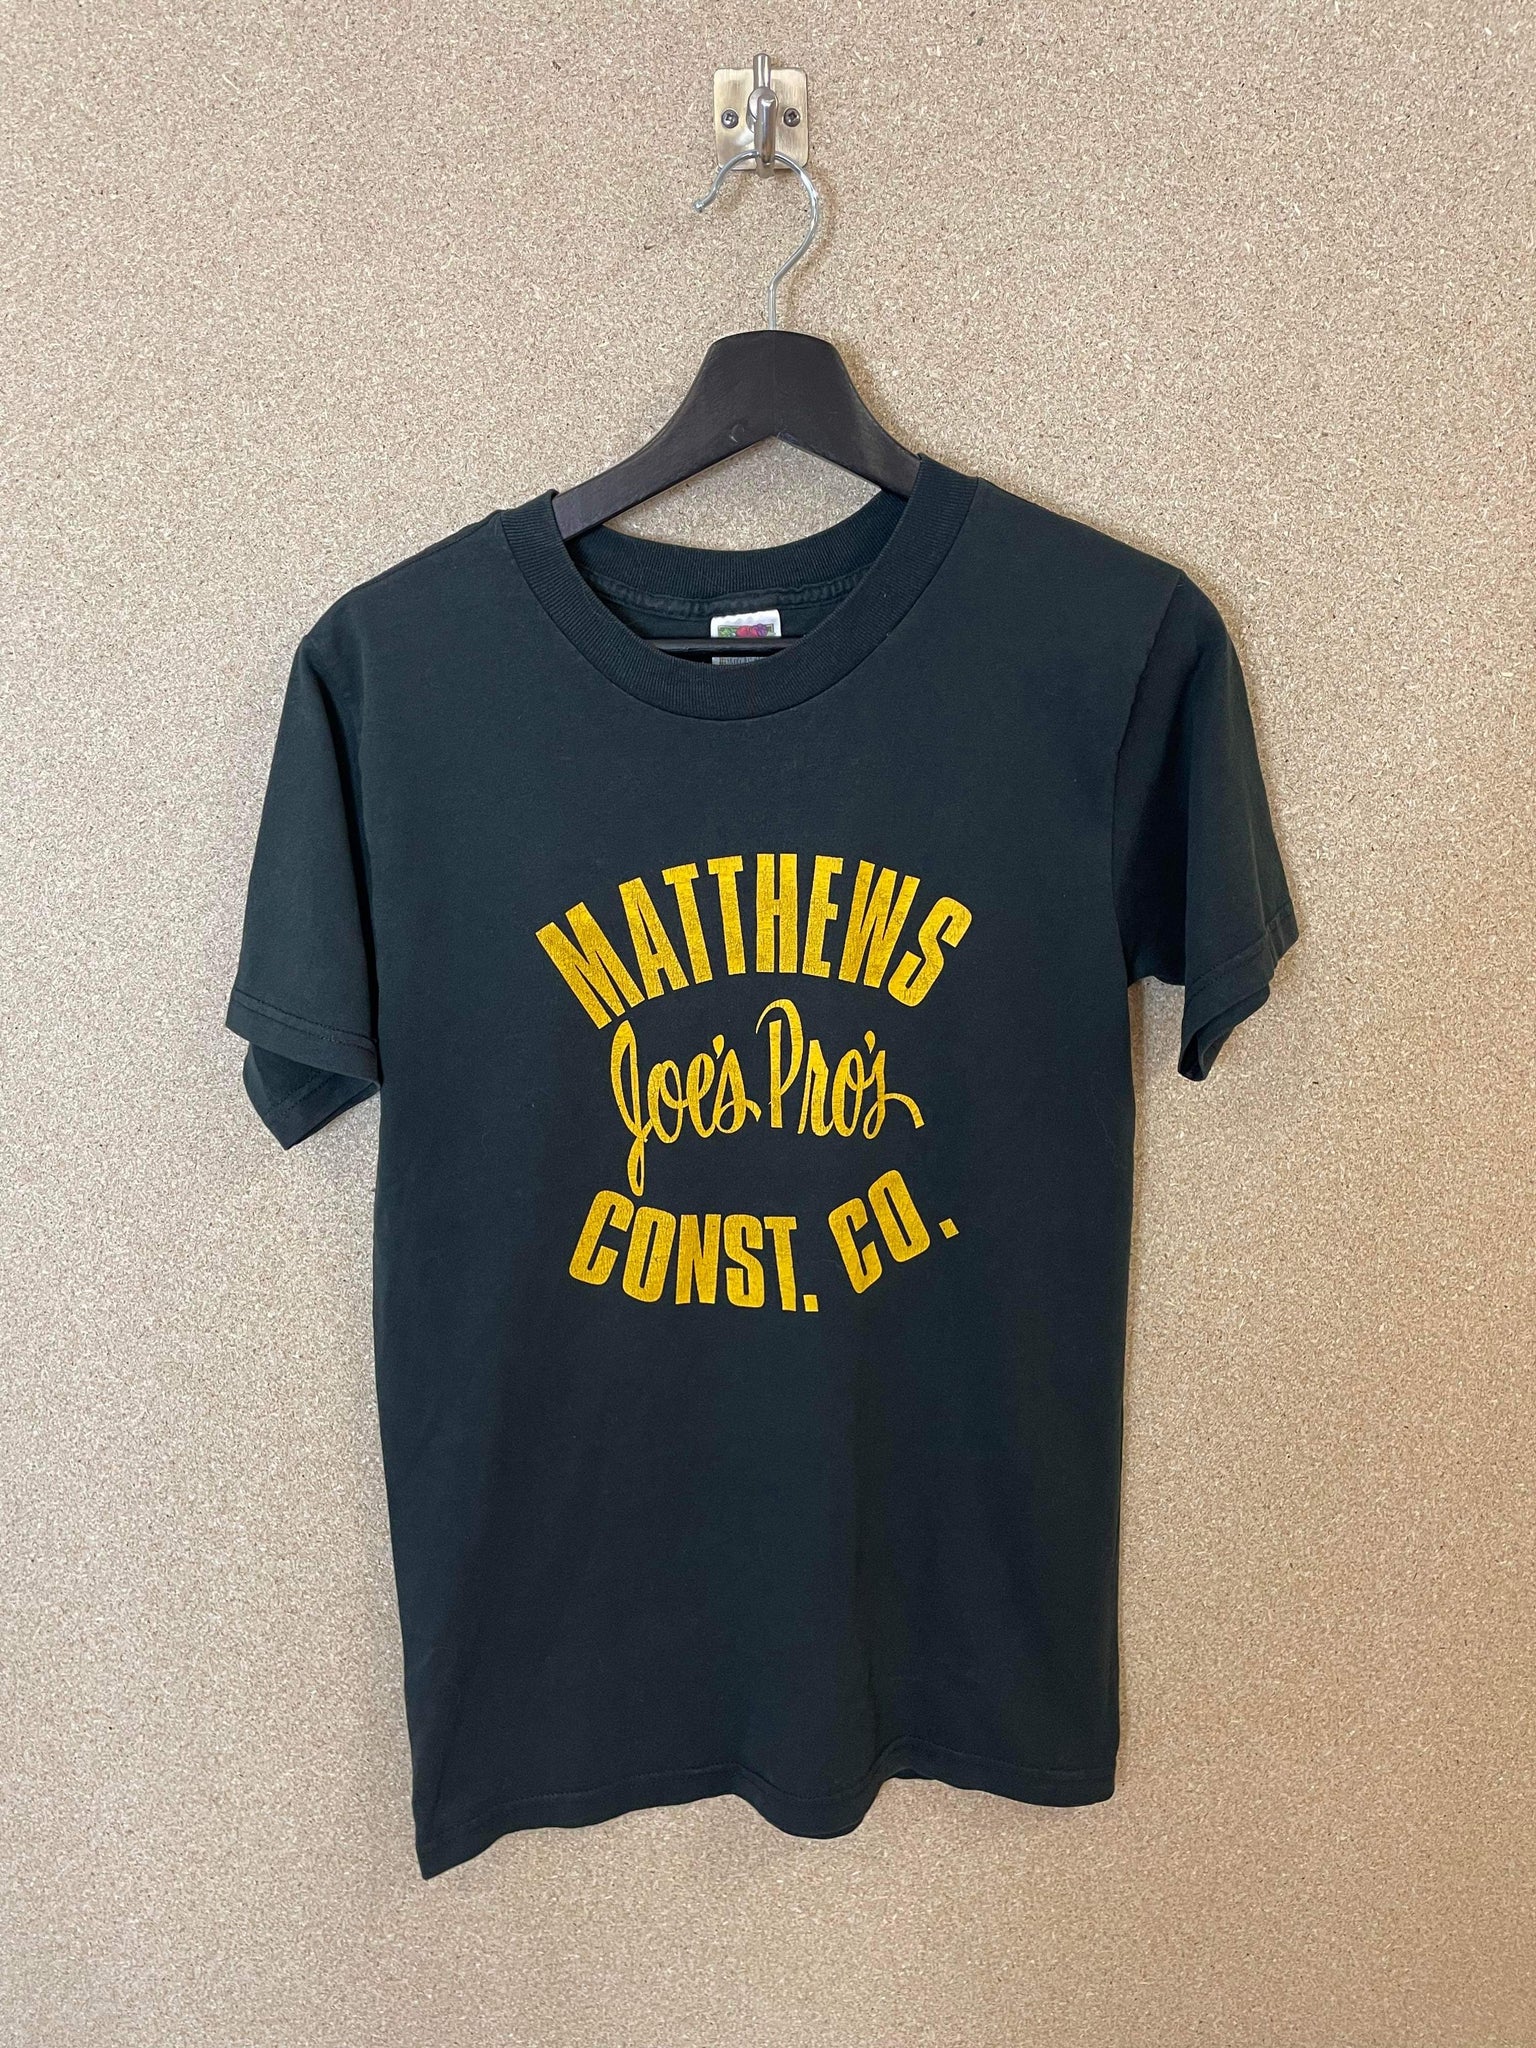 Vintage Matthews Const Co 90s Tee - S